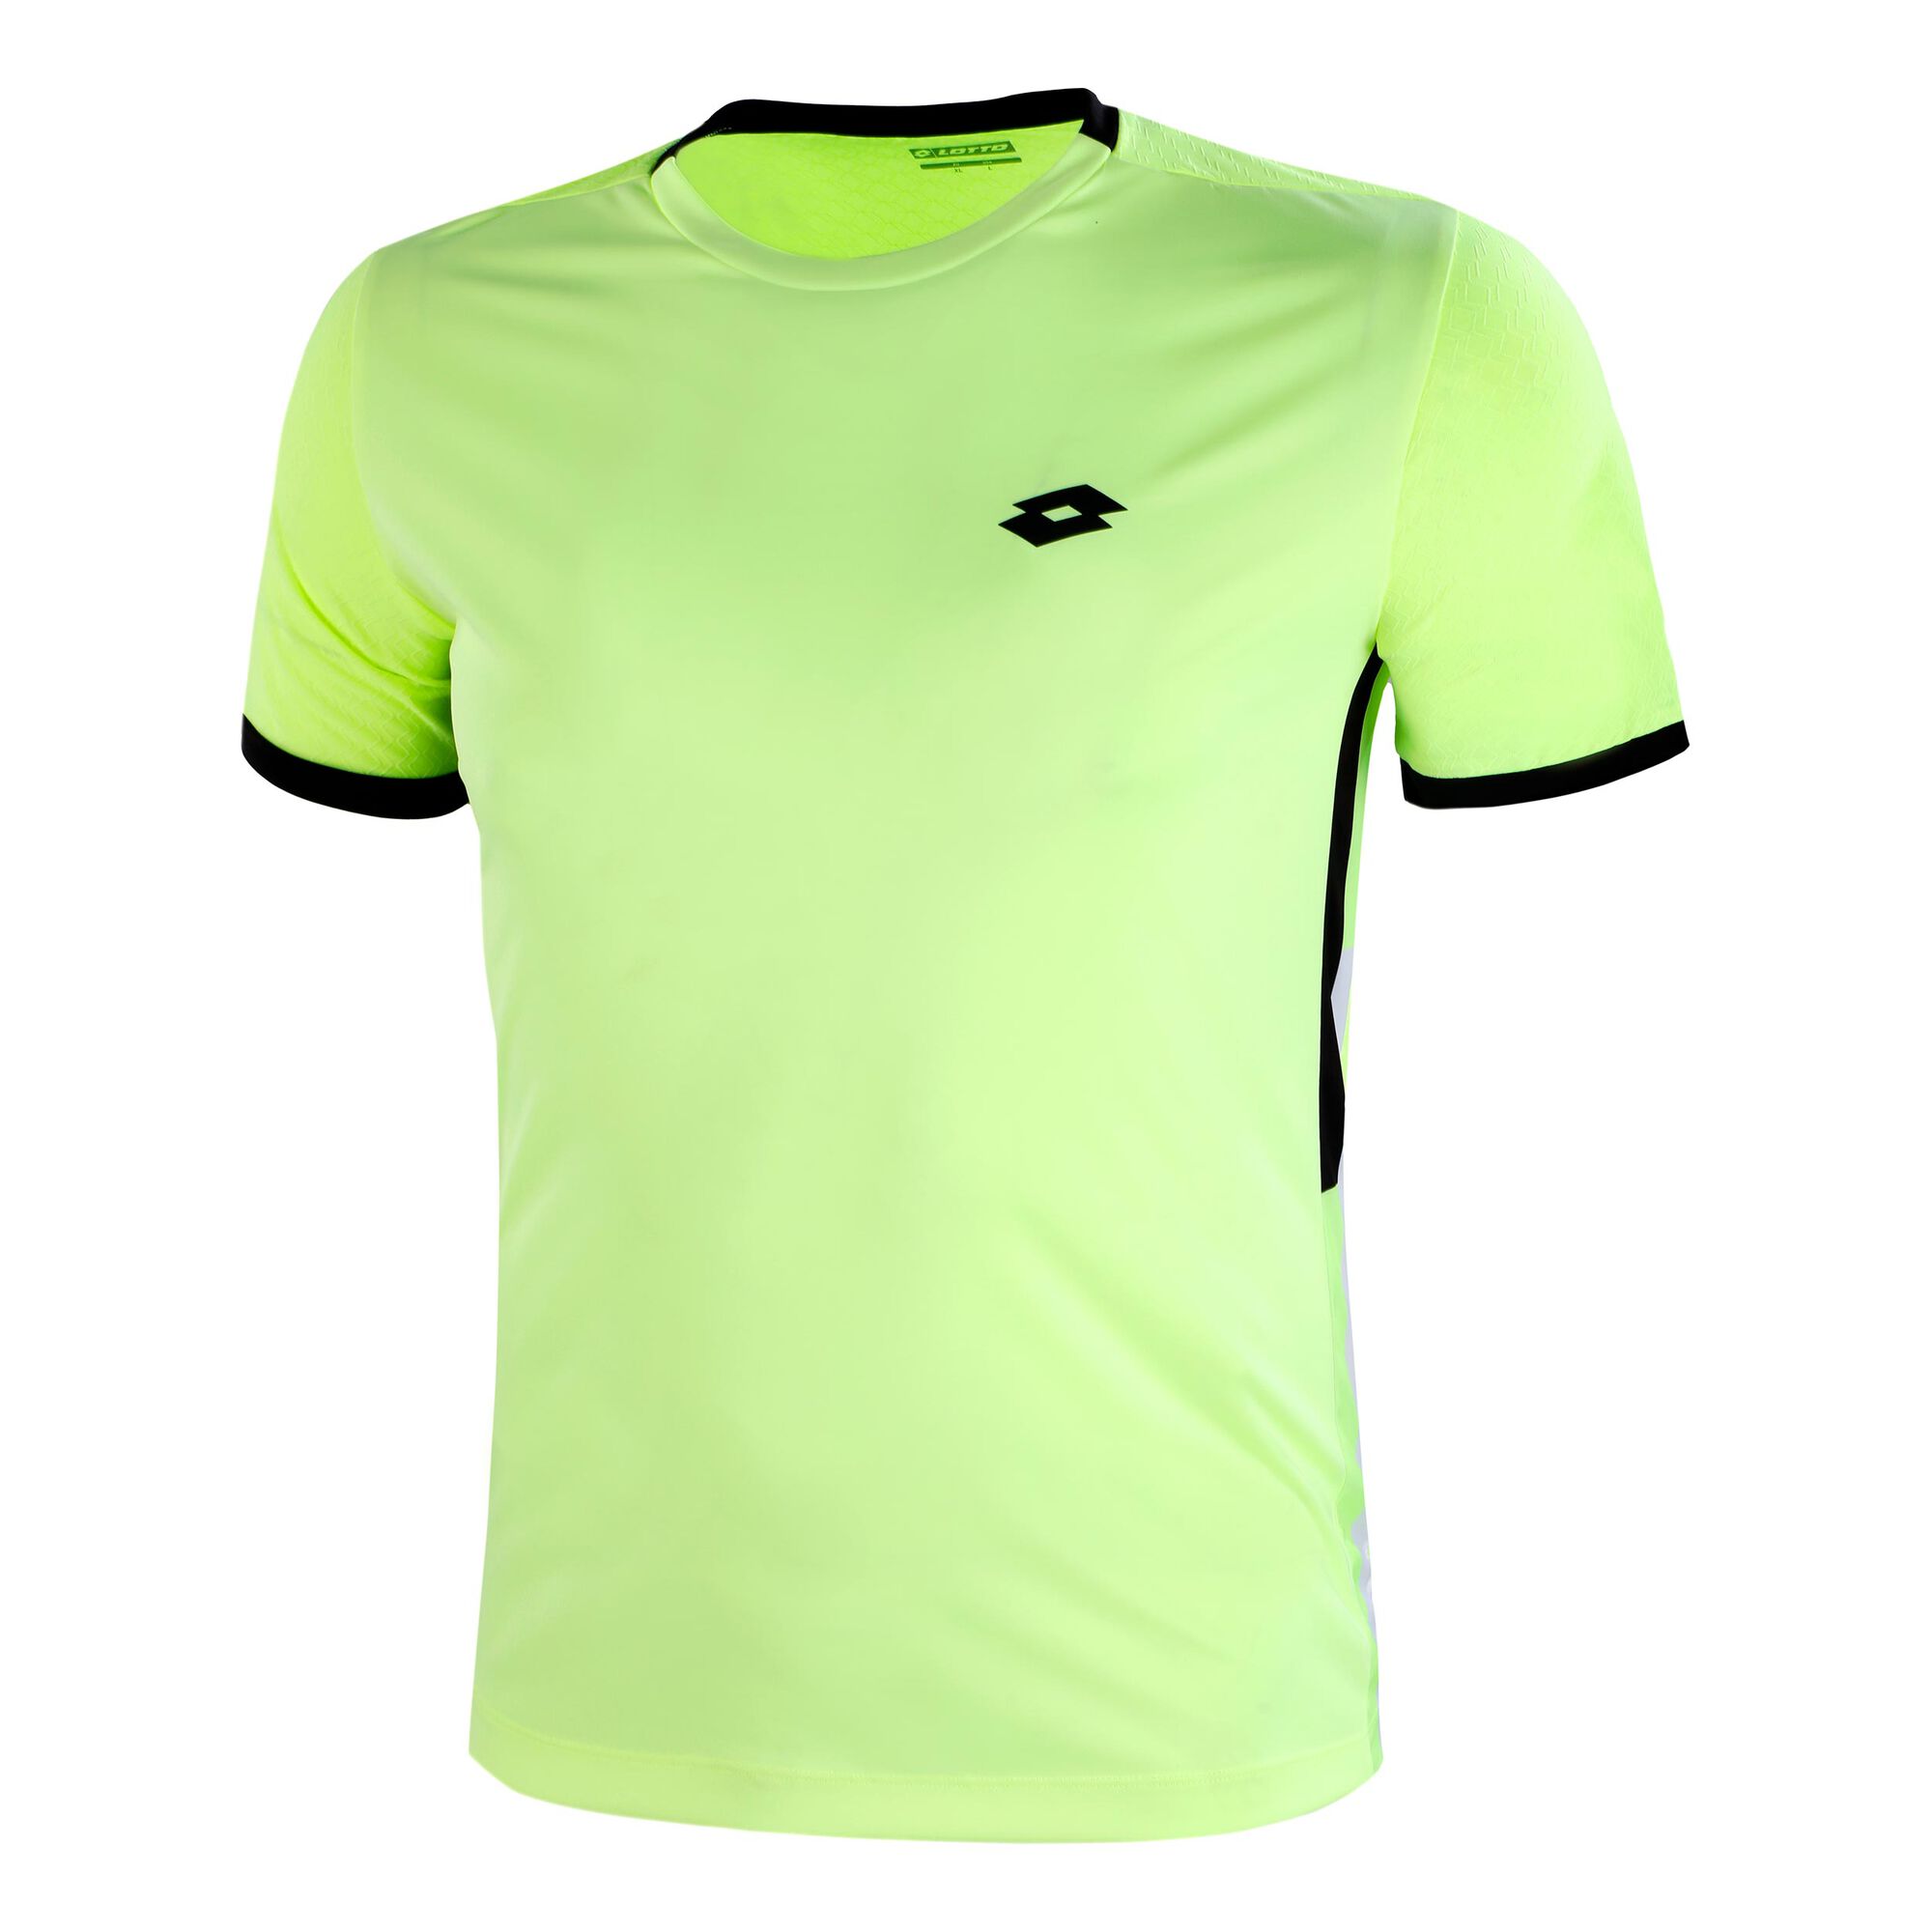 buy Lotto Top Ten III PL T-Shirt Men - Neon Yellow, Black online ...